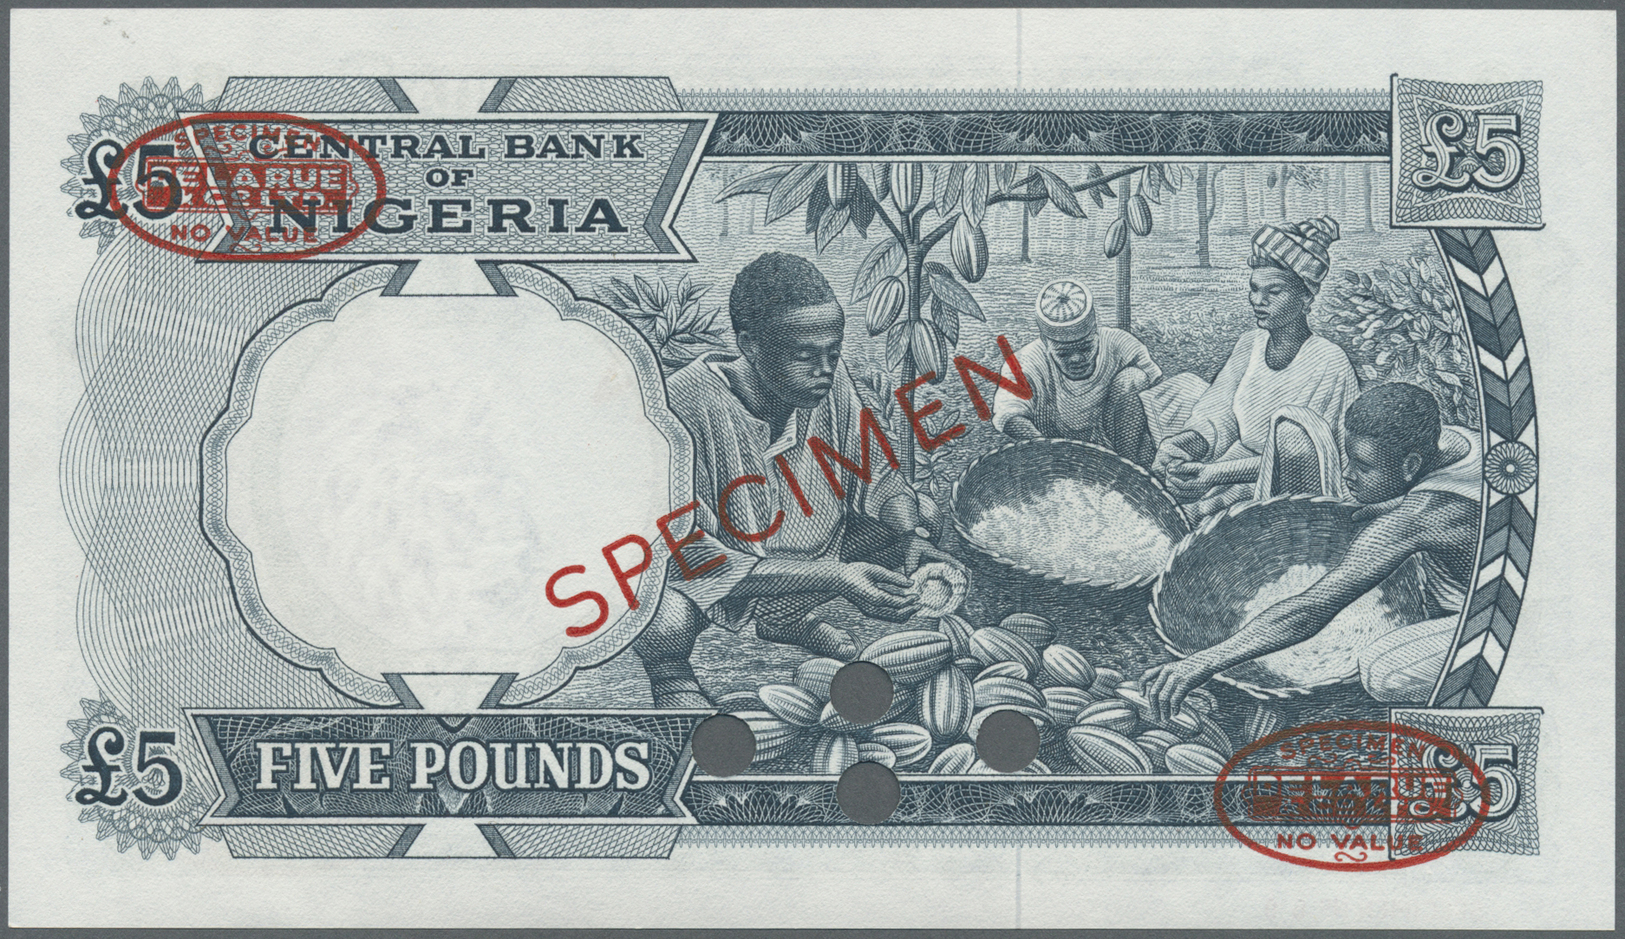 01871 Nigeria: 5 Pounds 1967 TDLR Specimen, P.9s In UNC Condition - Nigeria